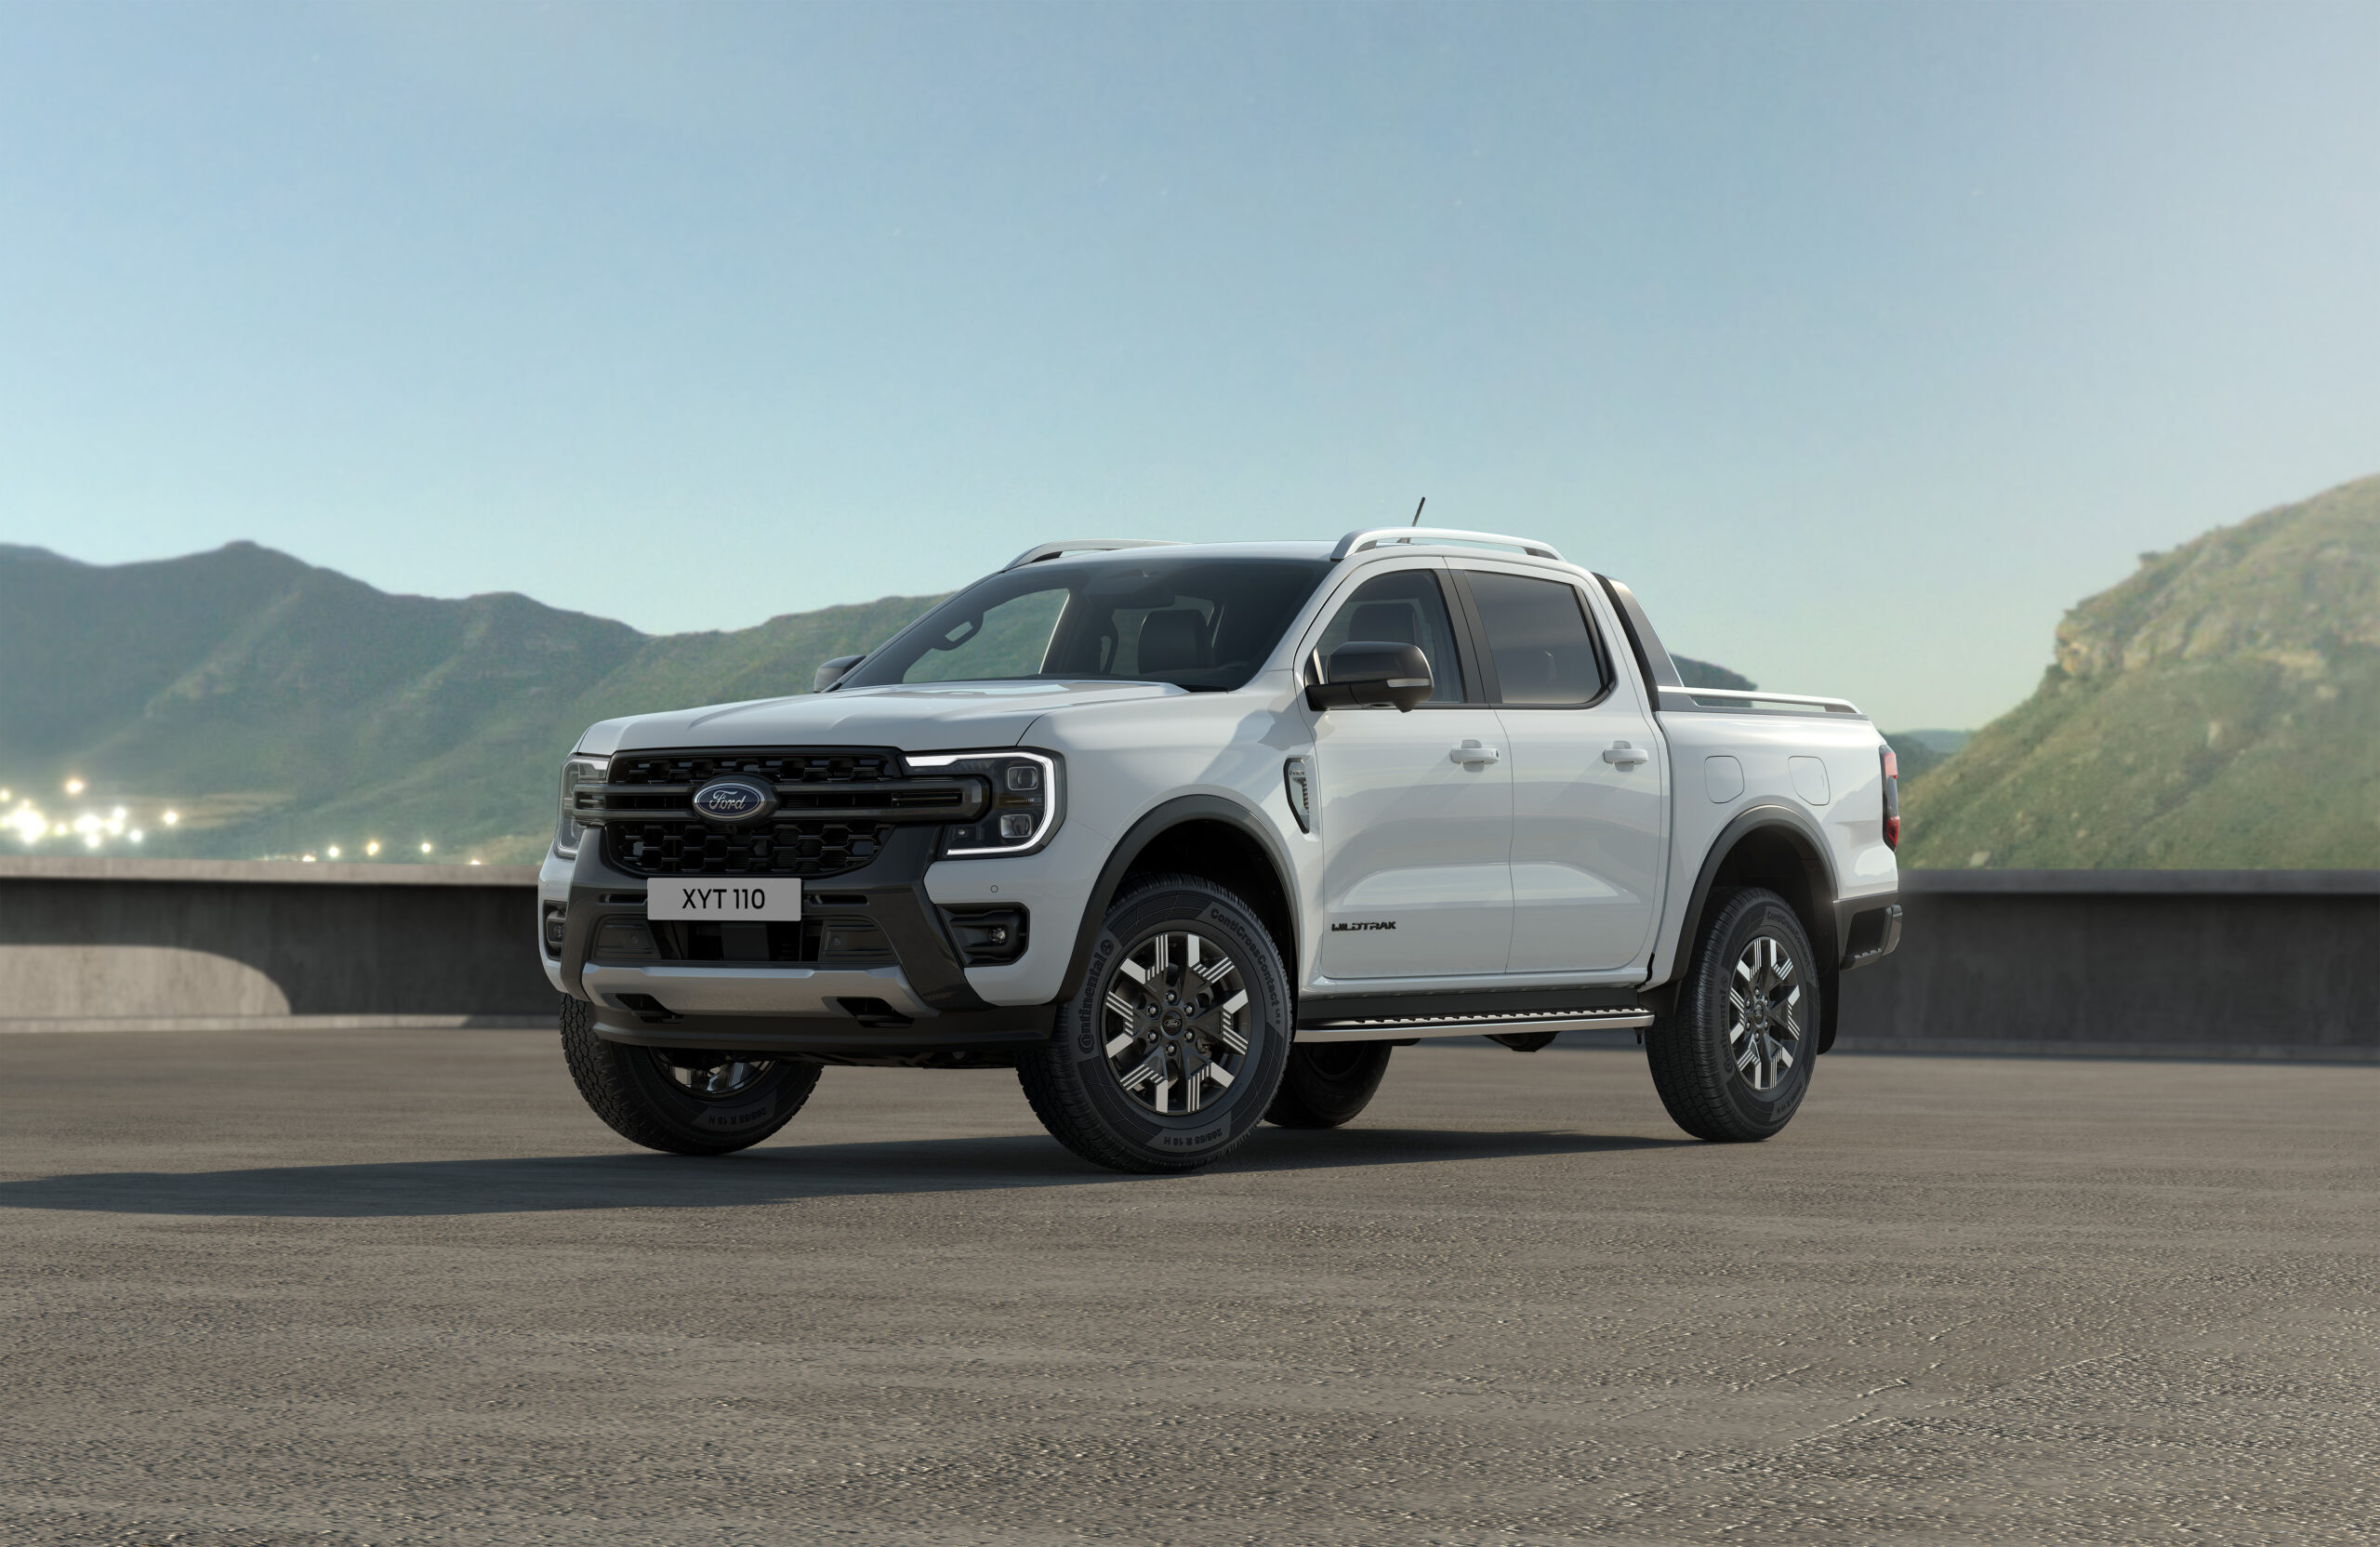 Fords Ikoniske Ranger pick-up går elektrisk i 2025 – Plug-in Hybrid på vej